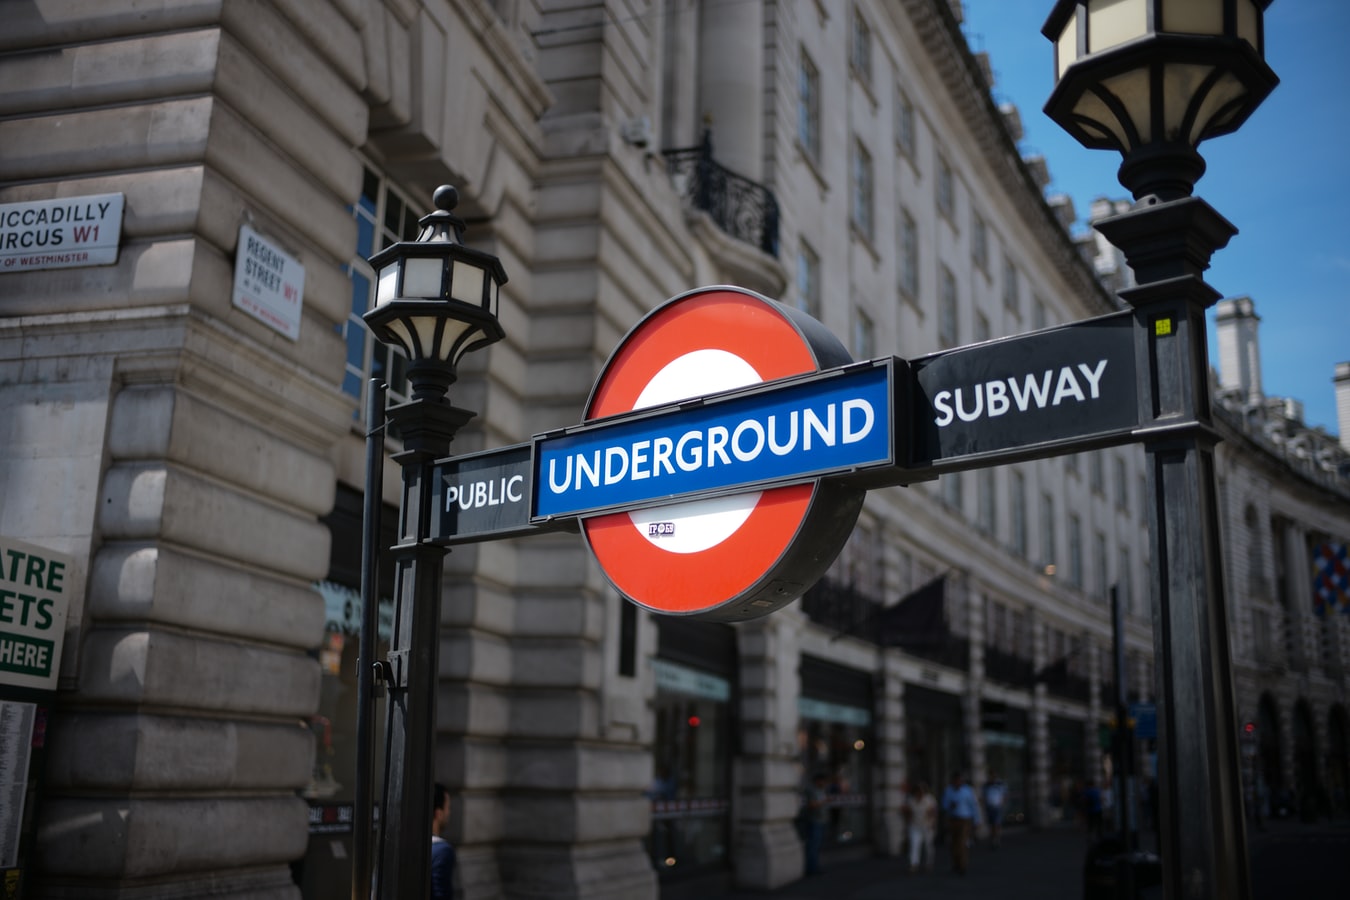 Λονδίνο τώρα: Εκκενώθηκε σταθμός τρένου, λόγο για «ύποπτο αντικείμενο» κάνει η αστυνομία